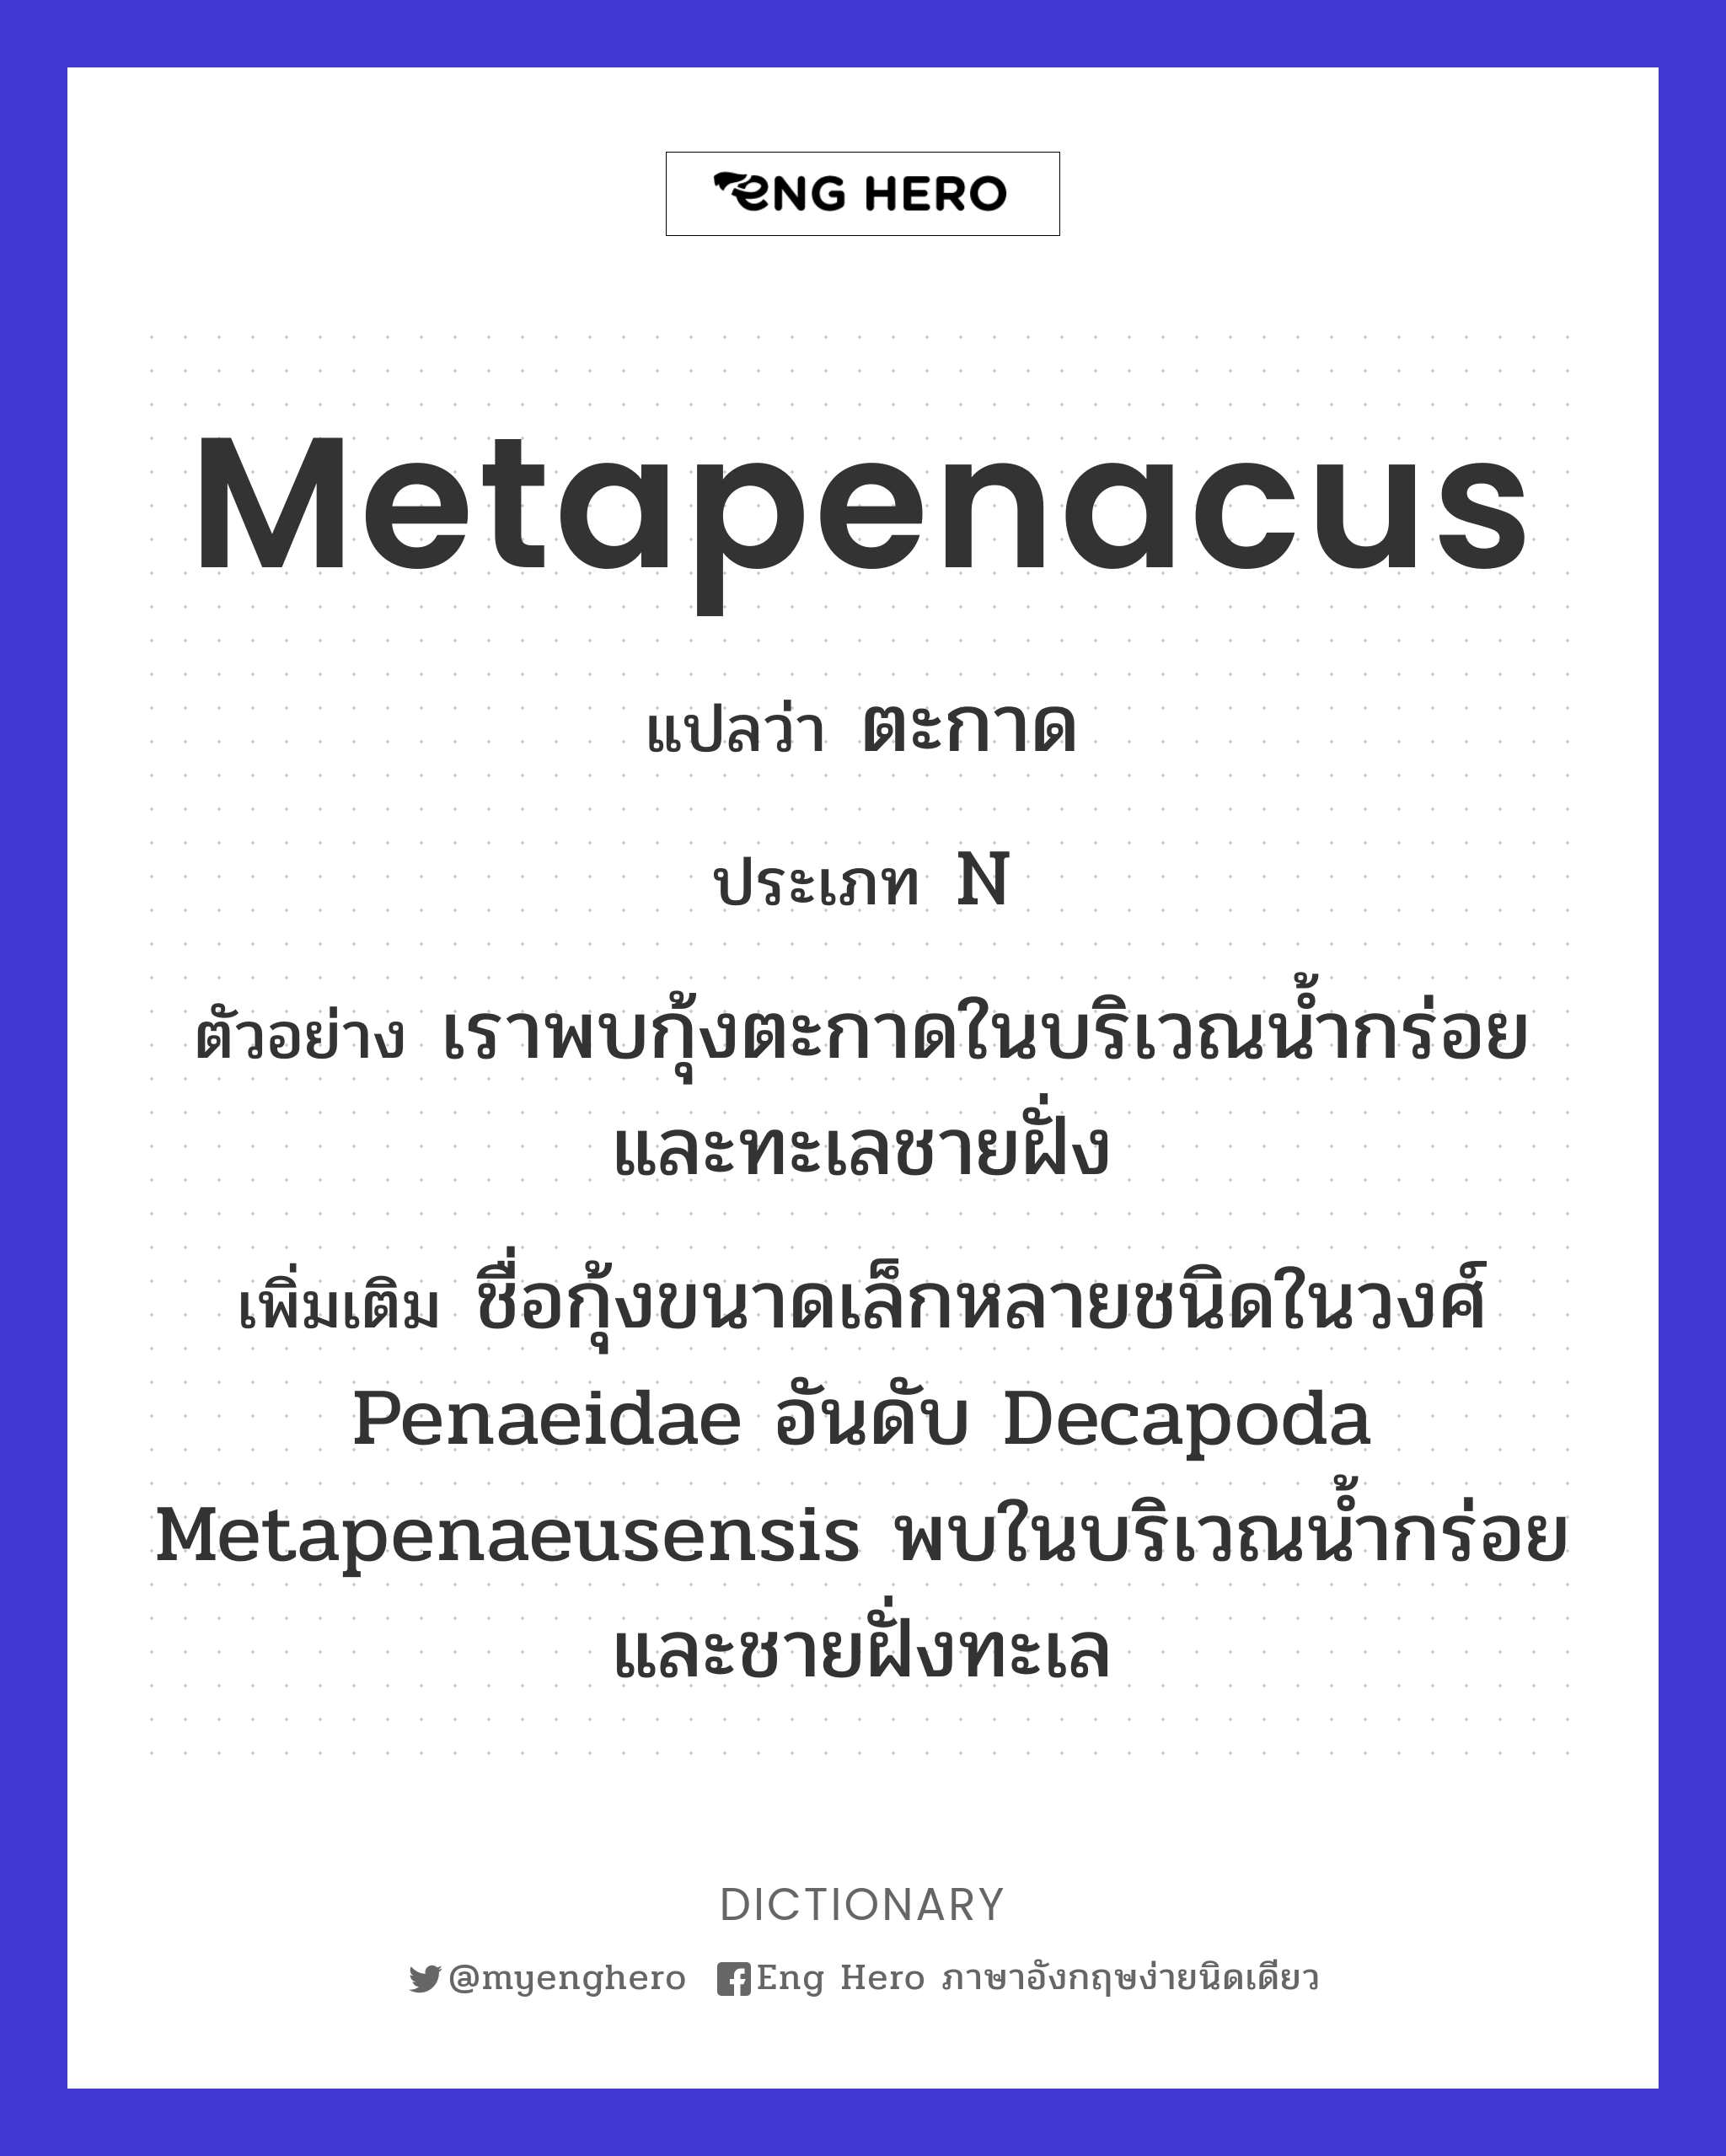 metapenacus